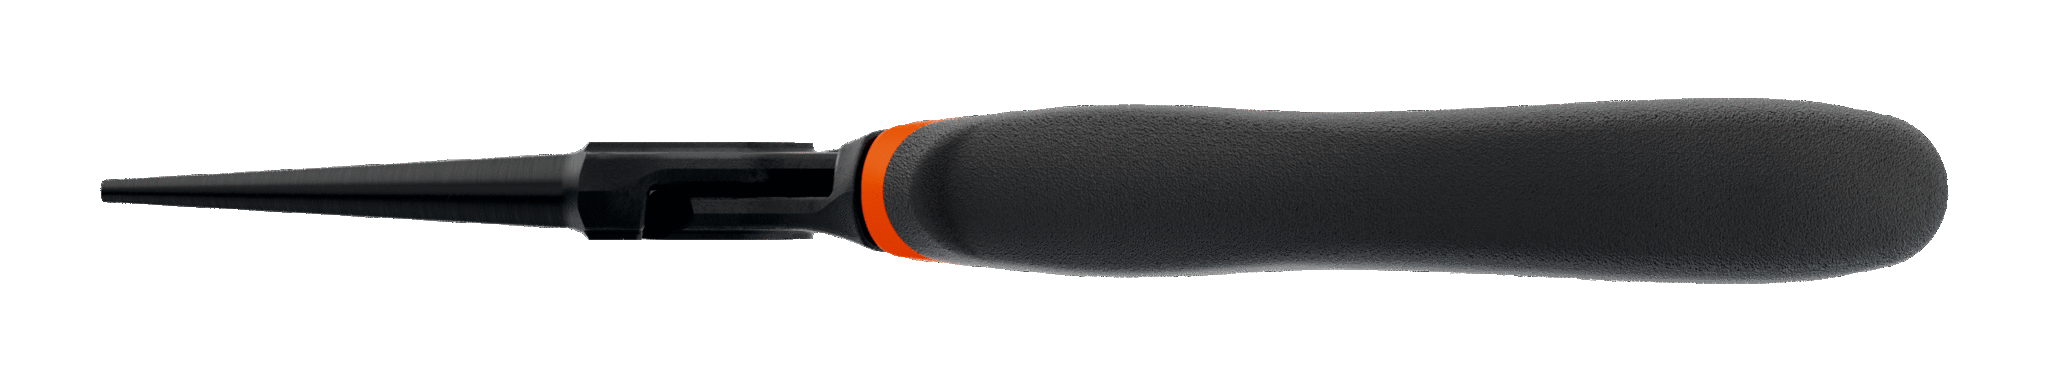 картинка Круглогубцы ERGO™ с двухкомпанентными рукоятками и фосфатным покрытием (160 mm) Промышленная упаковка BAHCO 2521 G-160 IP от магазина "Элит-инструмент"